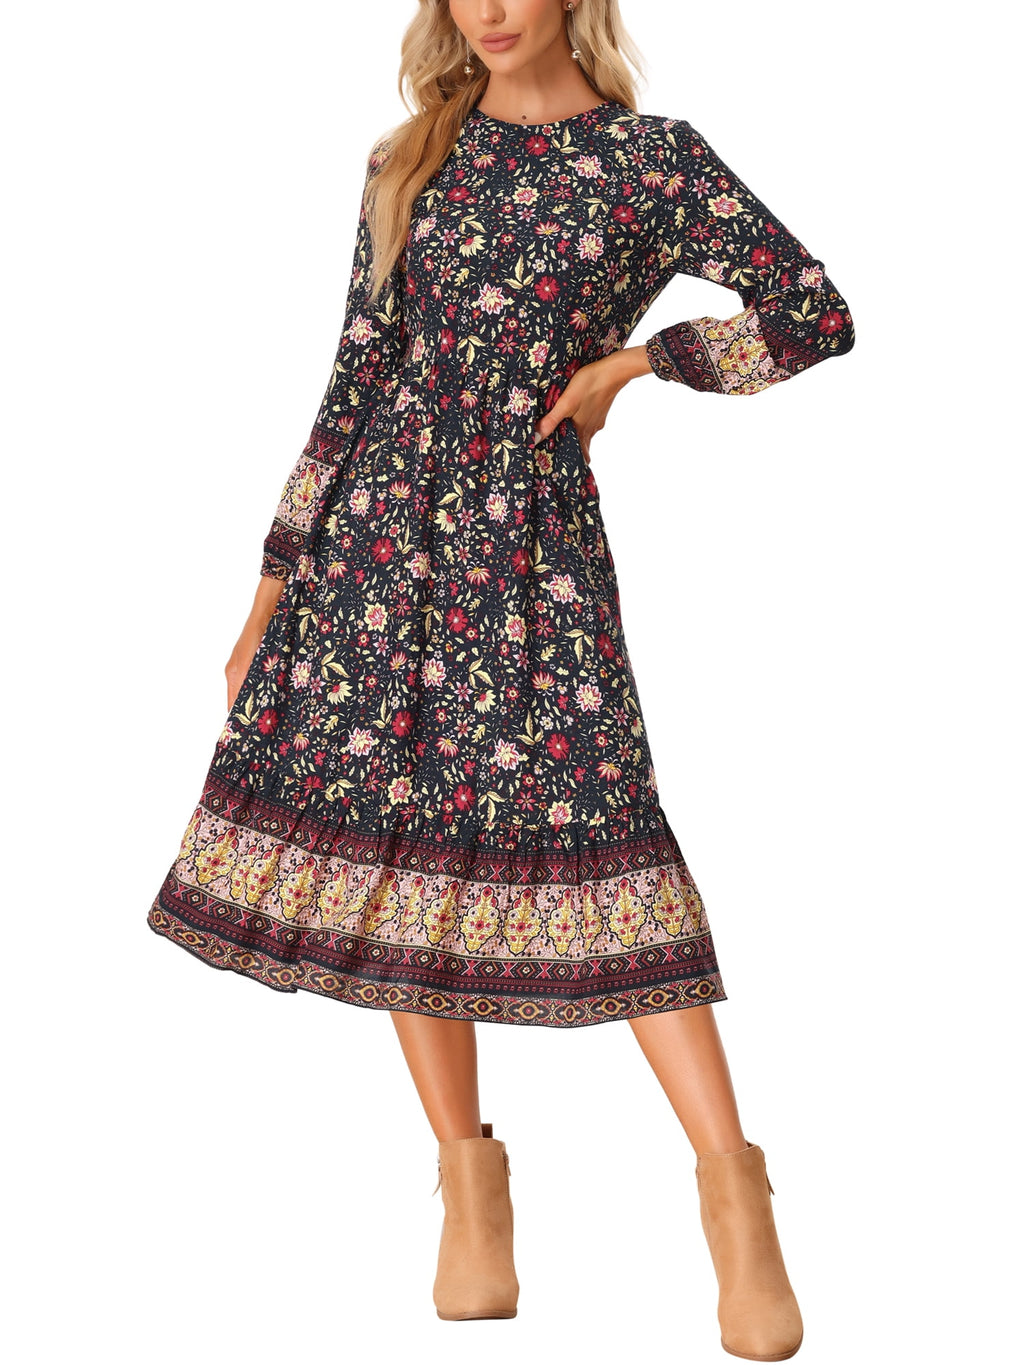 Allegra K Women's Boho Floral Long Sleeves Midi Dress - image 1 of 5